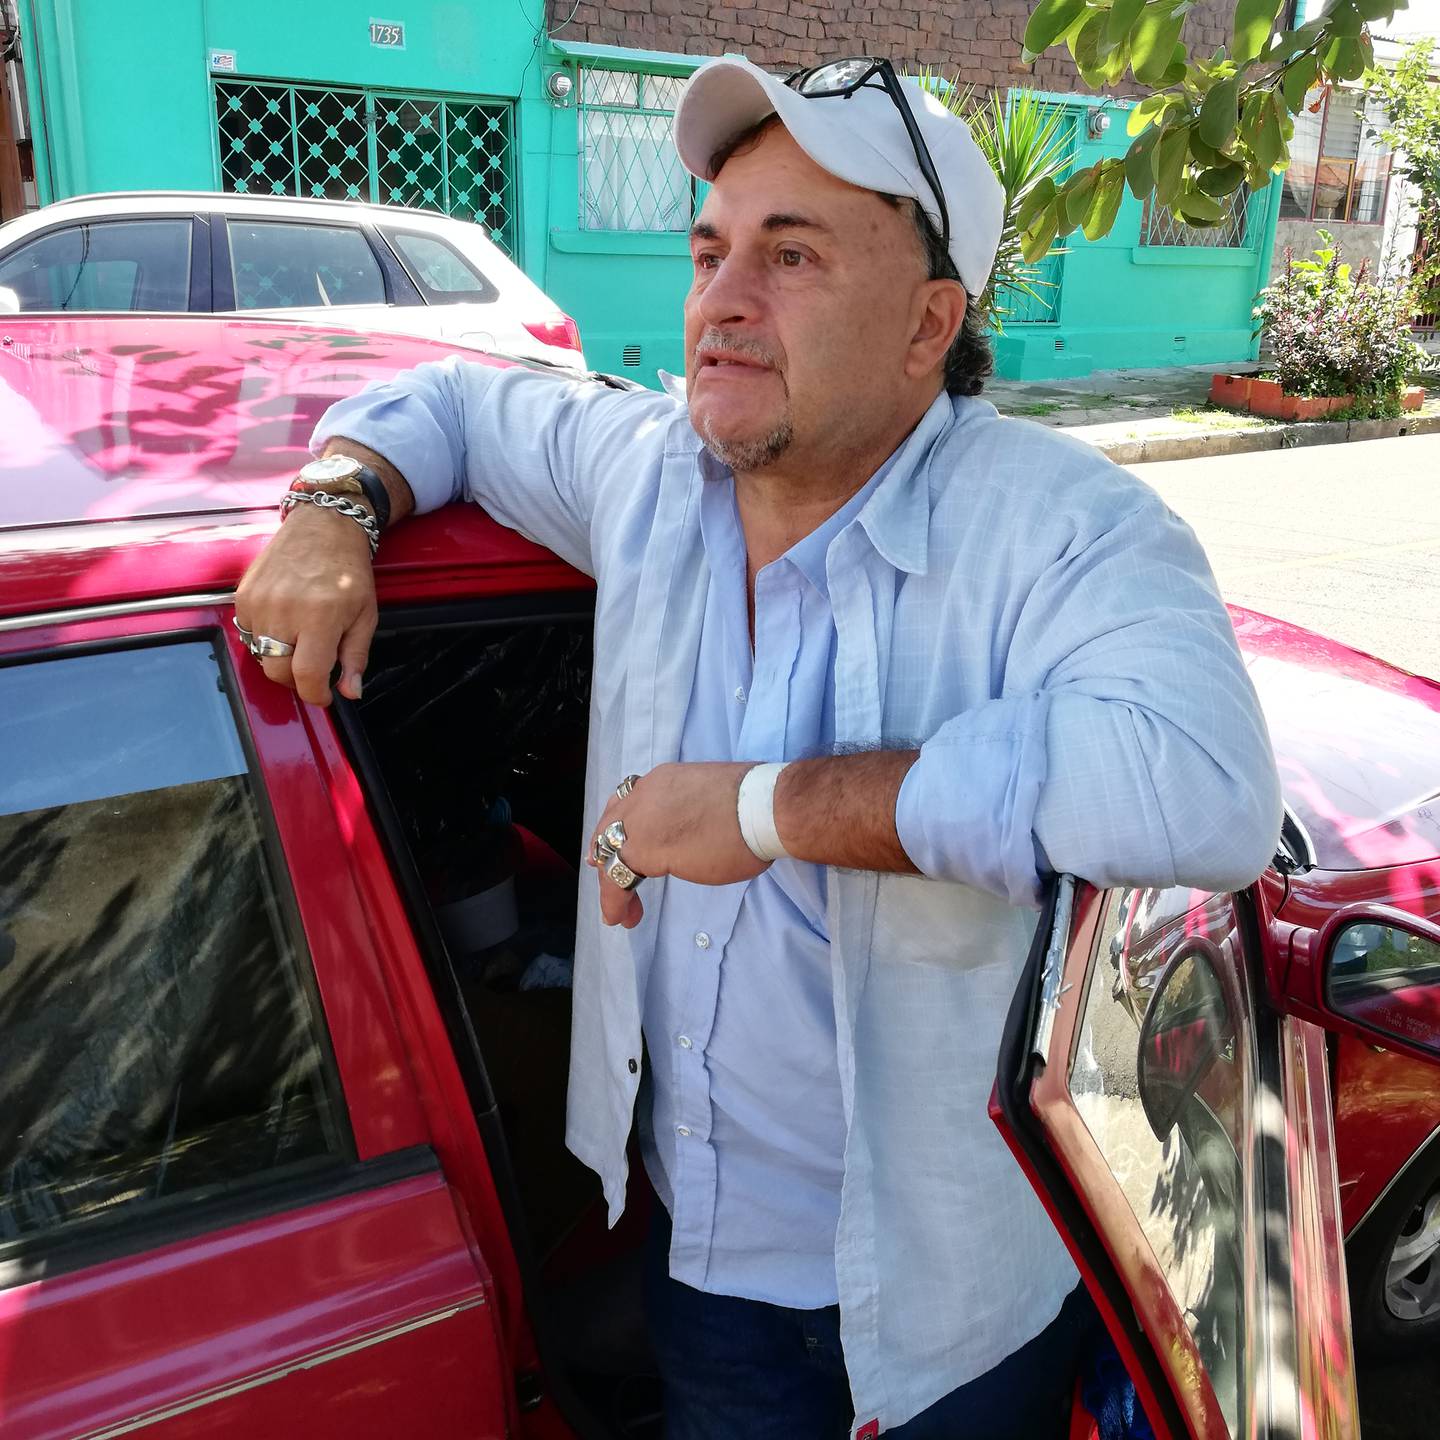 Eduardo Vega Ávila, ahora vecino de ningún lado, con 60 años, hipertenso y quien tiene dos meses de vivir en su carro varado en barrio Vasconia de San José.